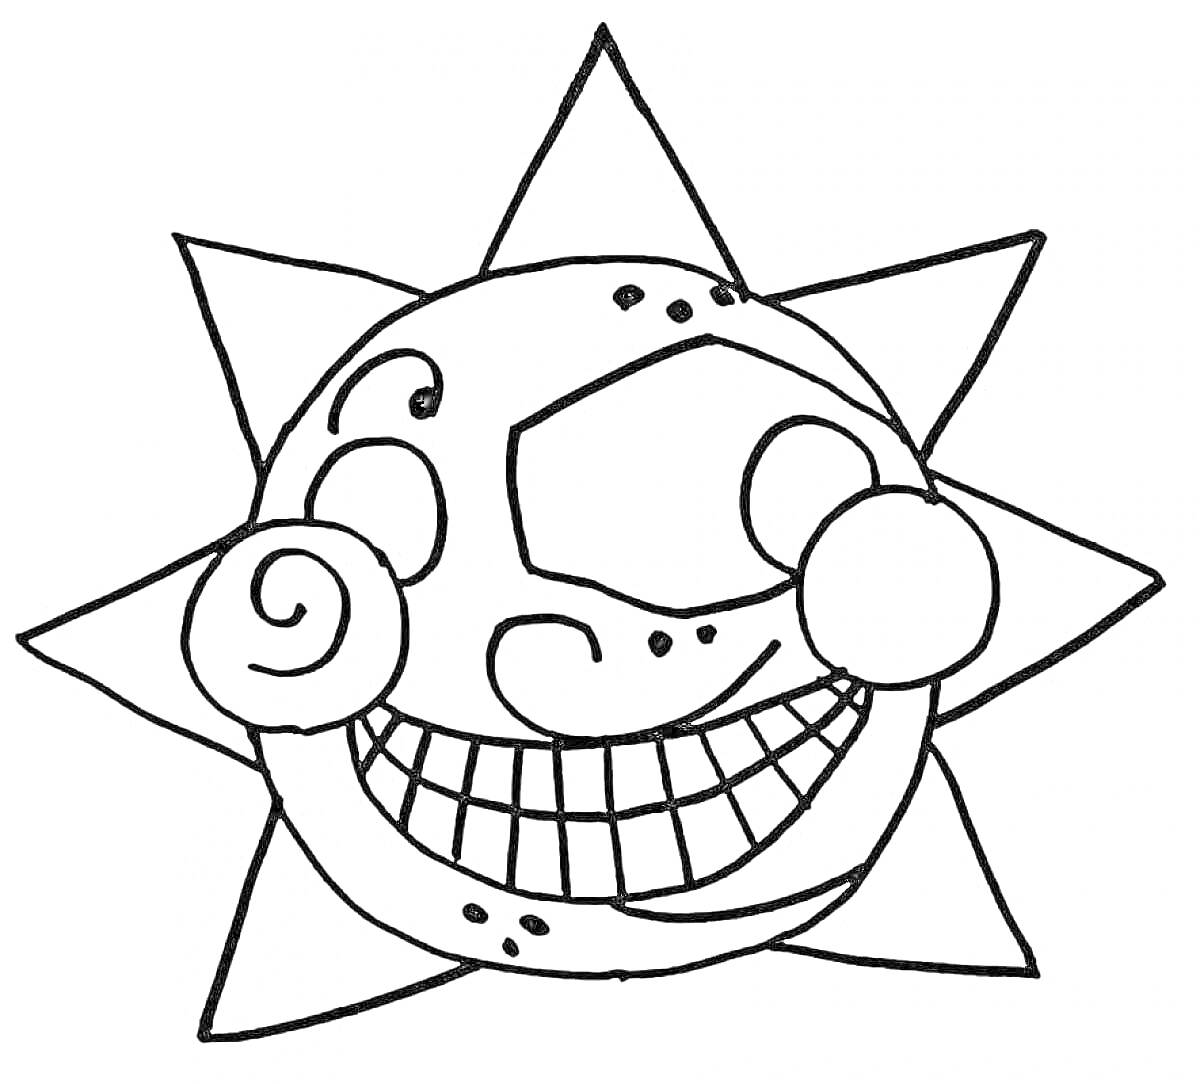 Раскраска Улыбающееся солнце-аниматроник с лучами, круглыми глазками и спиральными щеками